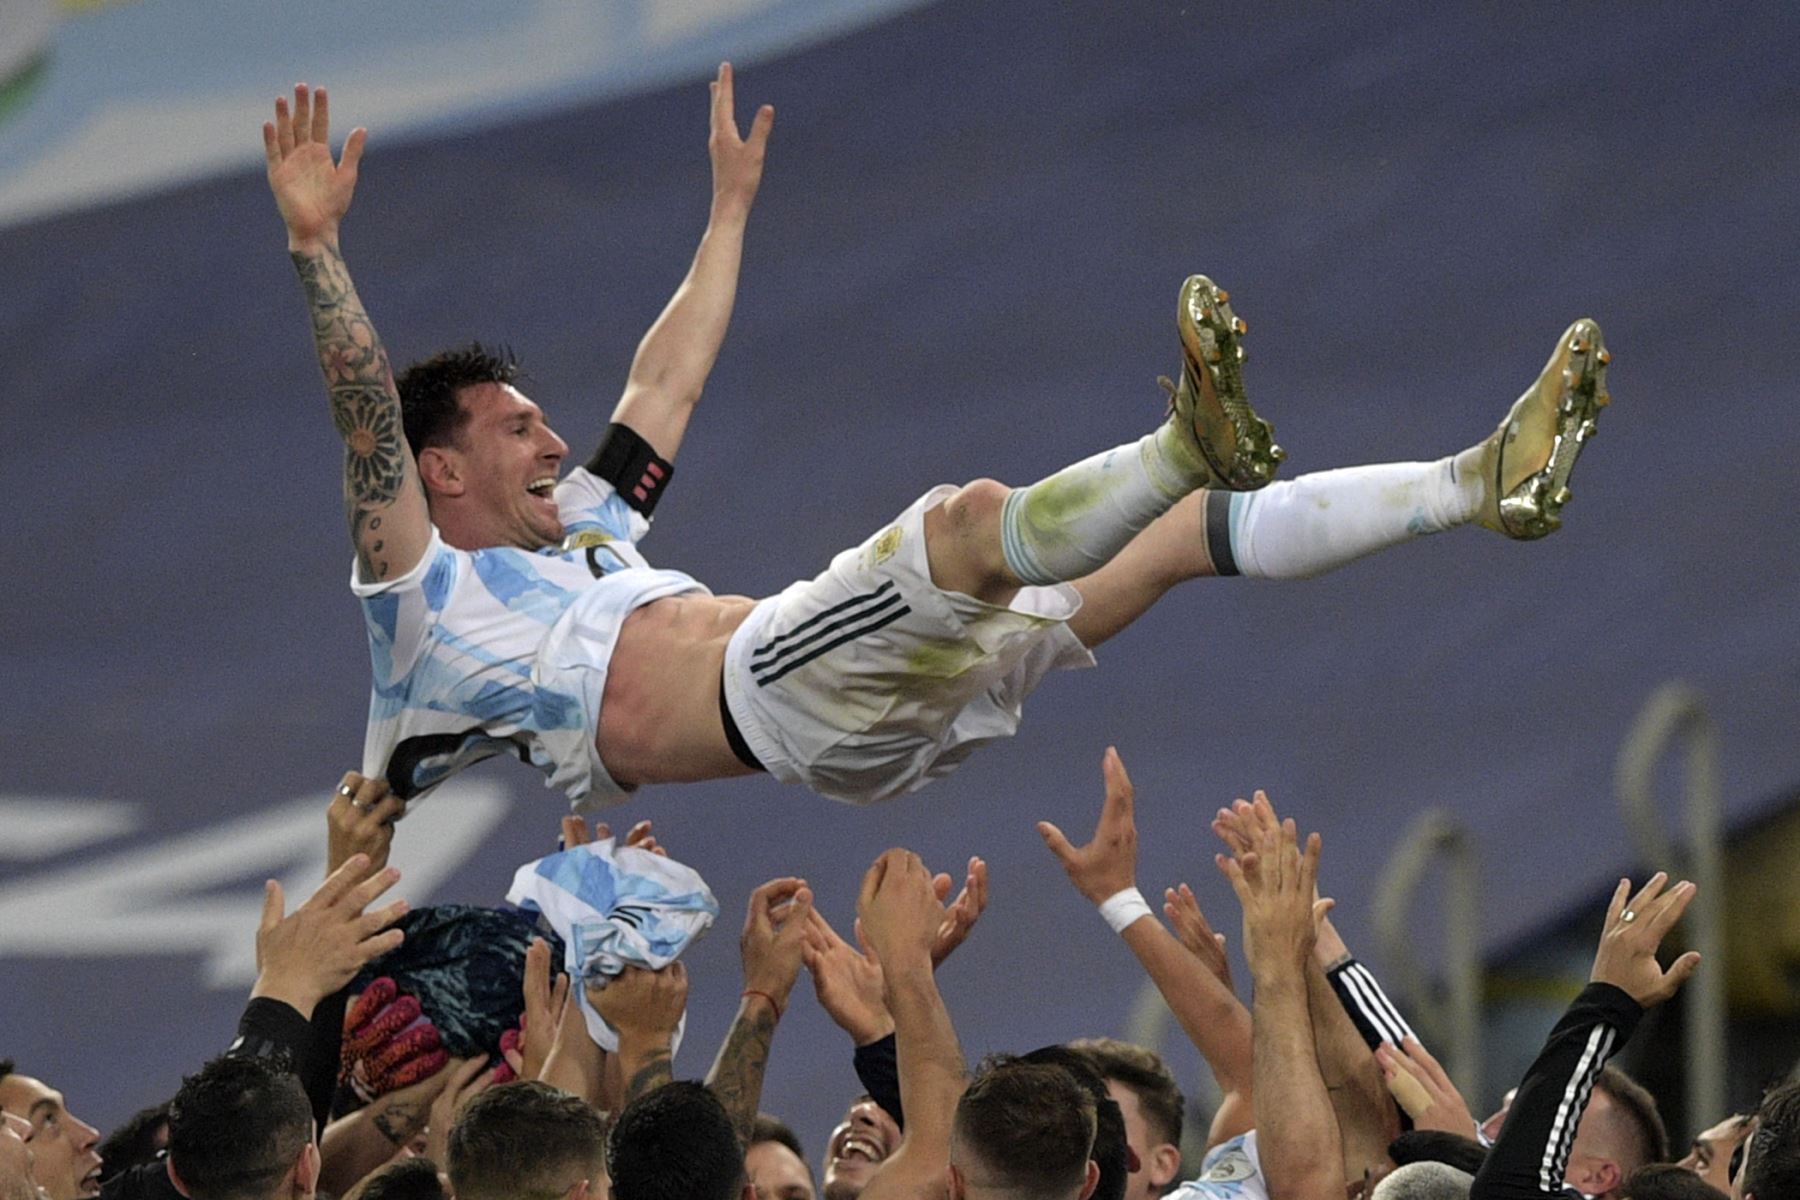 Van Gaal diz que título da Argentina no Catar foi premeditado